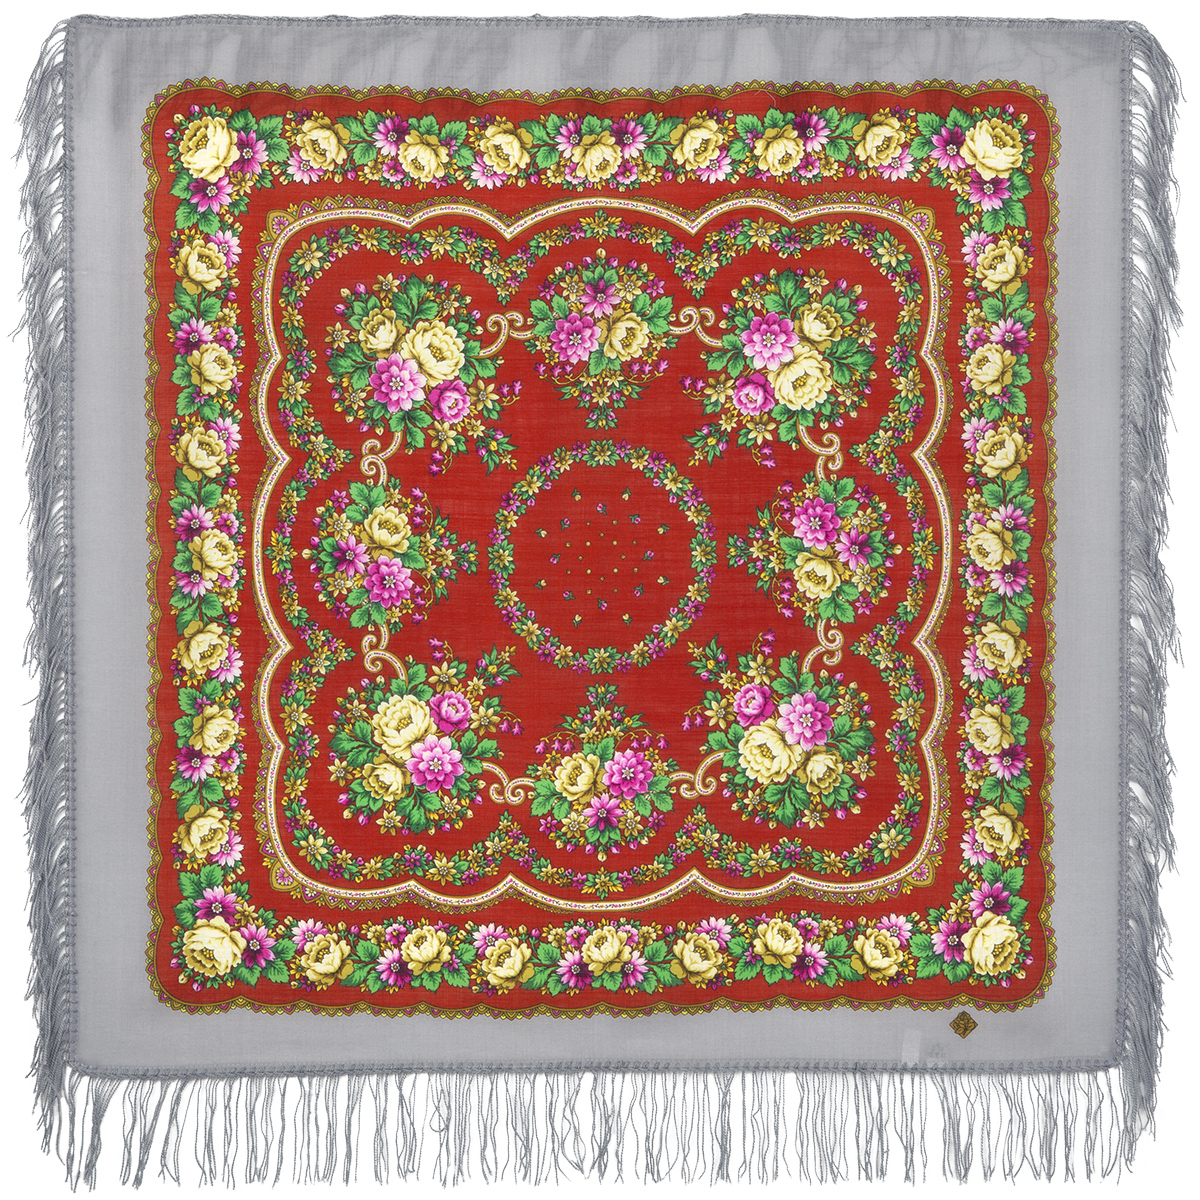 Платок женский Павловопосадский платок 1579 разноцветный, 89х89 см